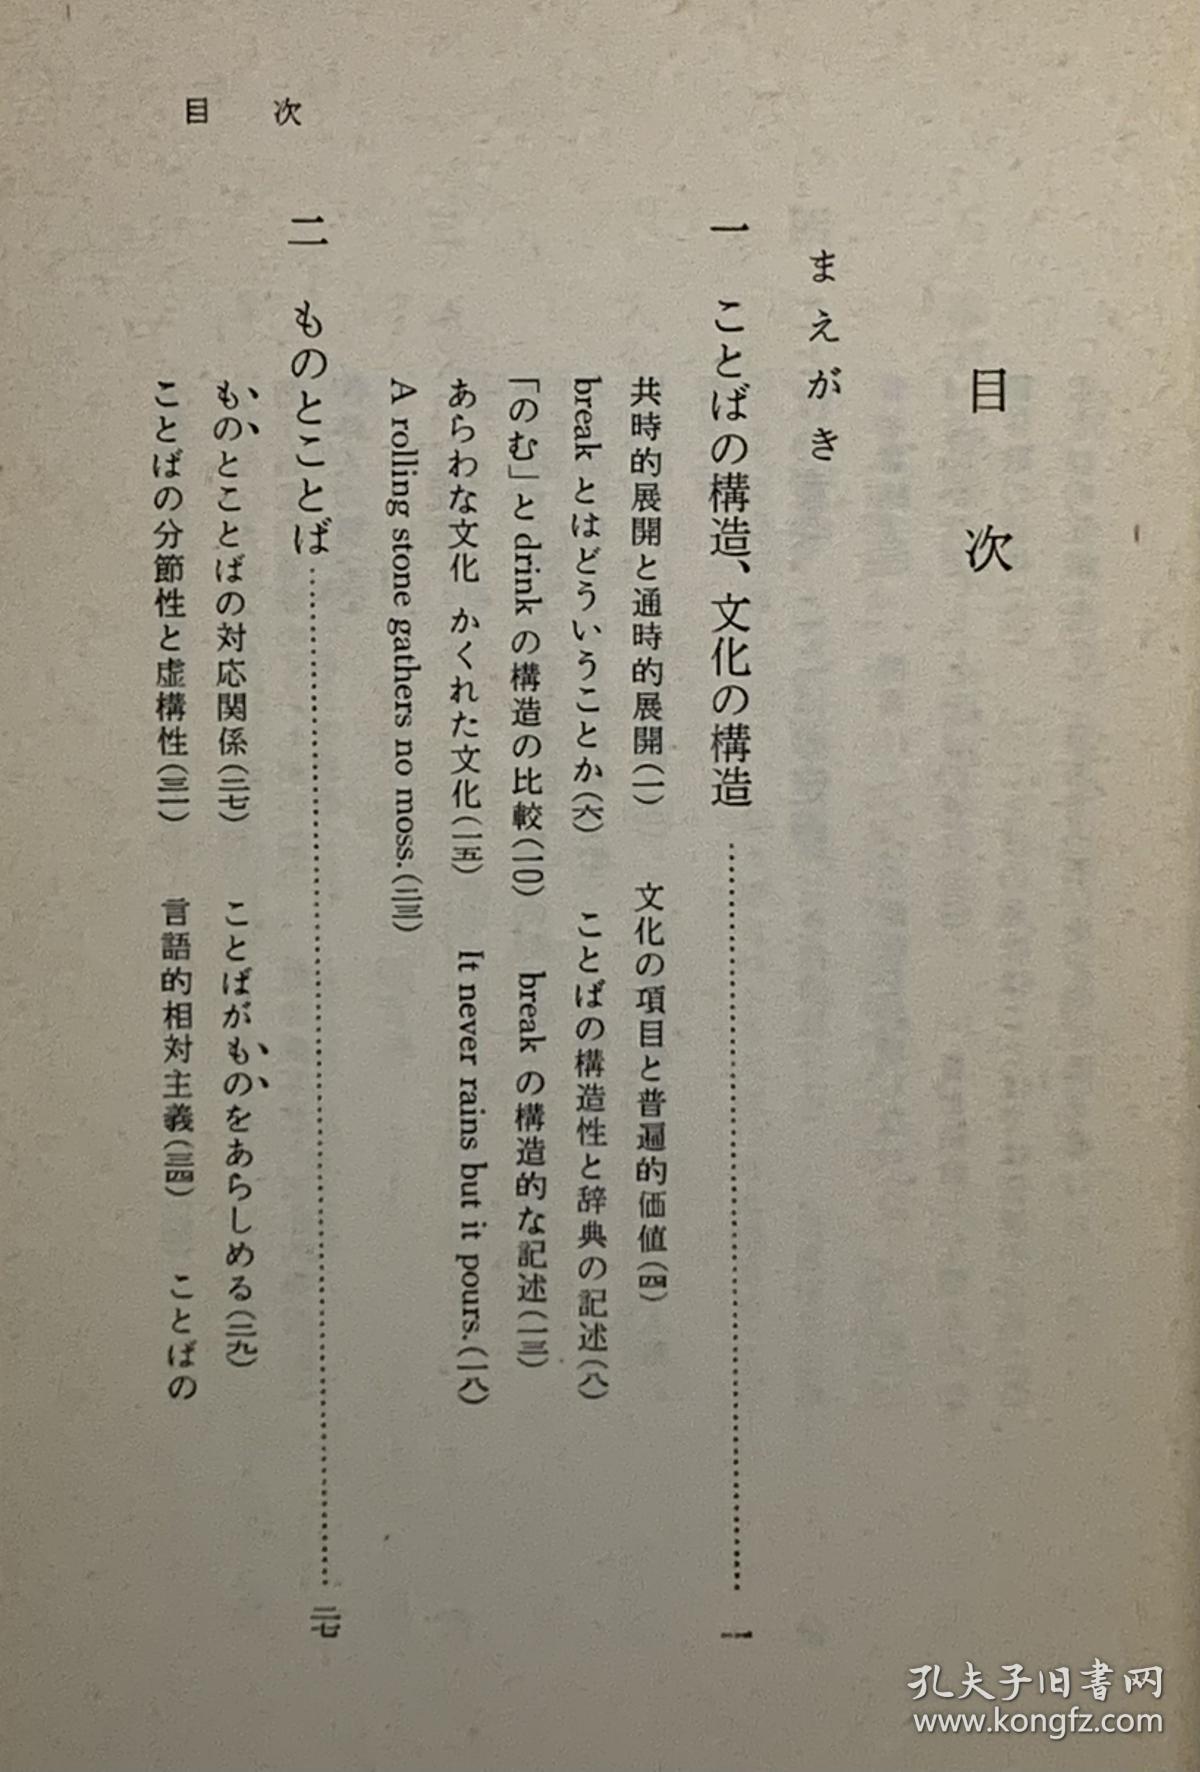 《语言与文化》   ことばと文化［岩波書 店1973年初版］   鈴木孝夫（语言学）日文原版书